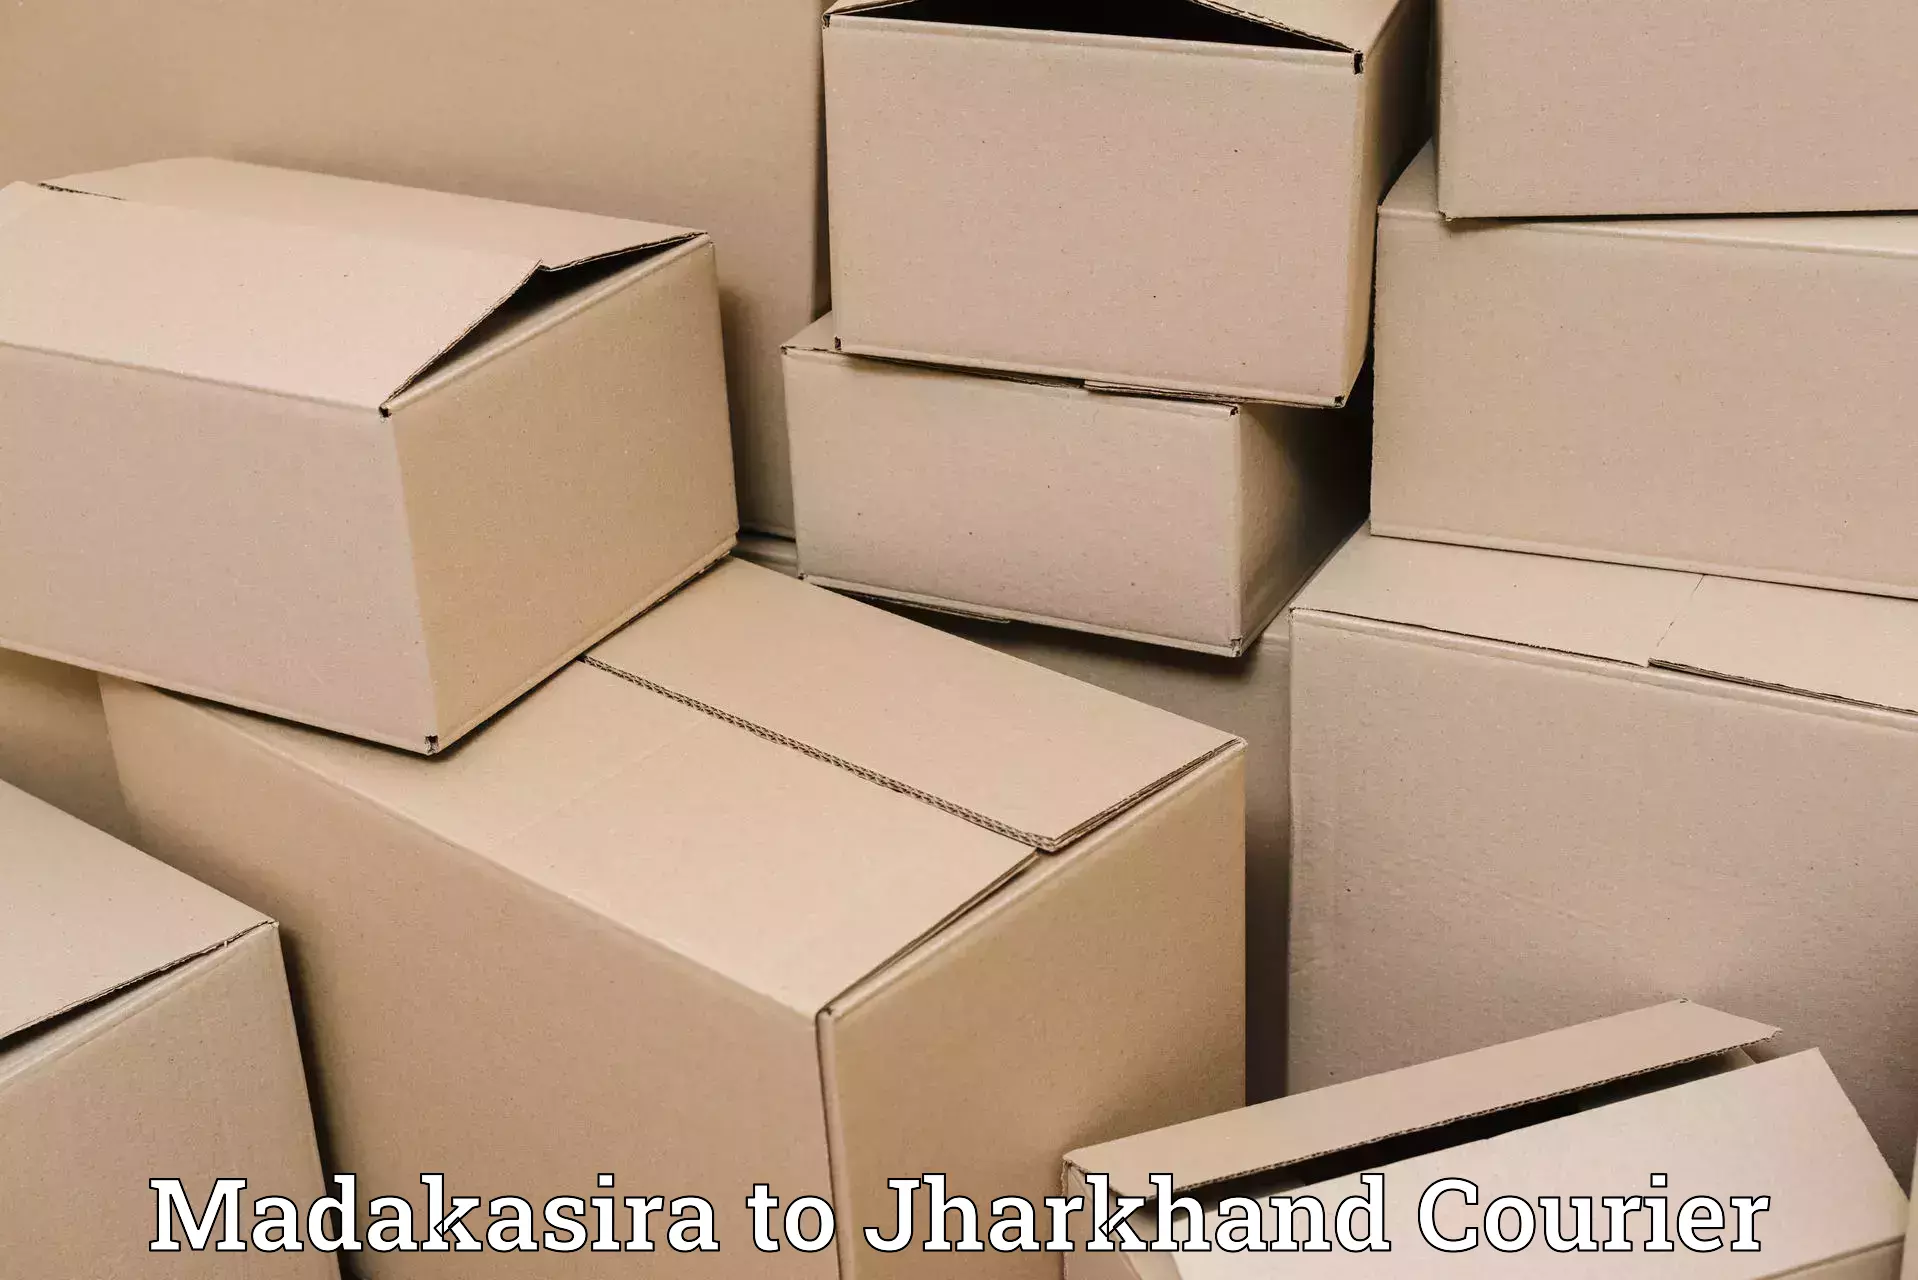 Global shipping networks Madakasira to Bundu